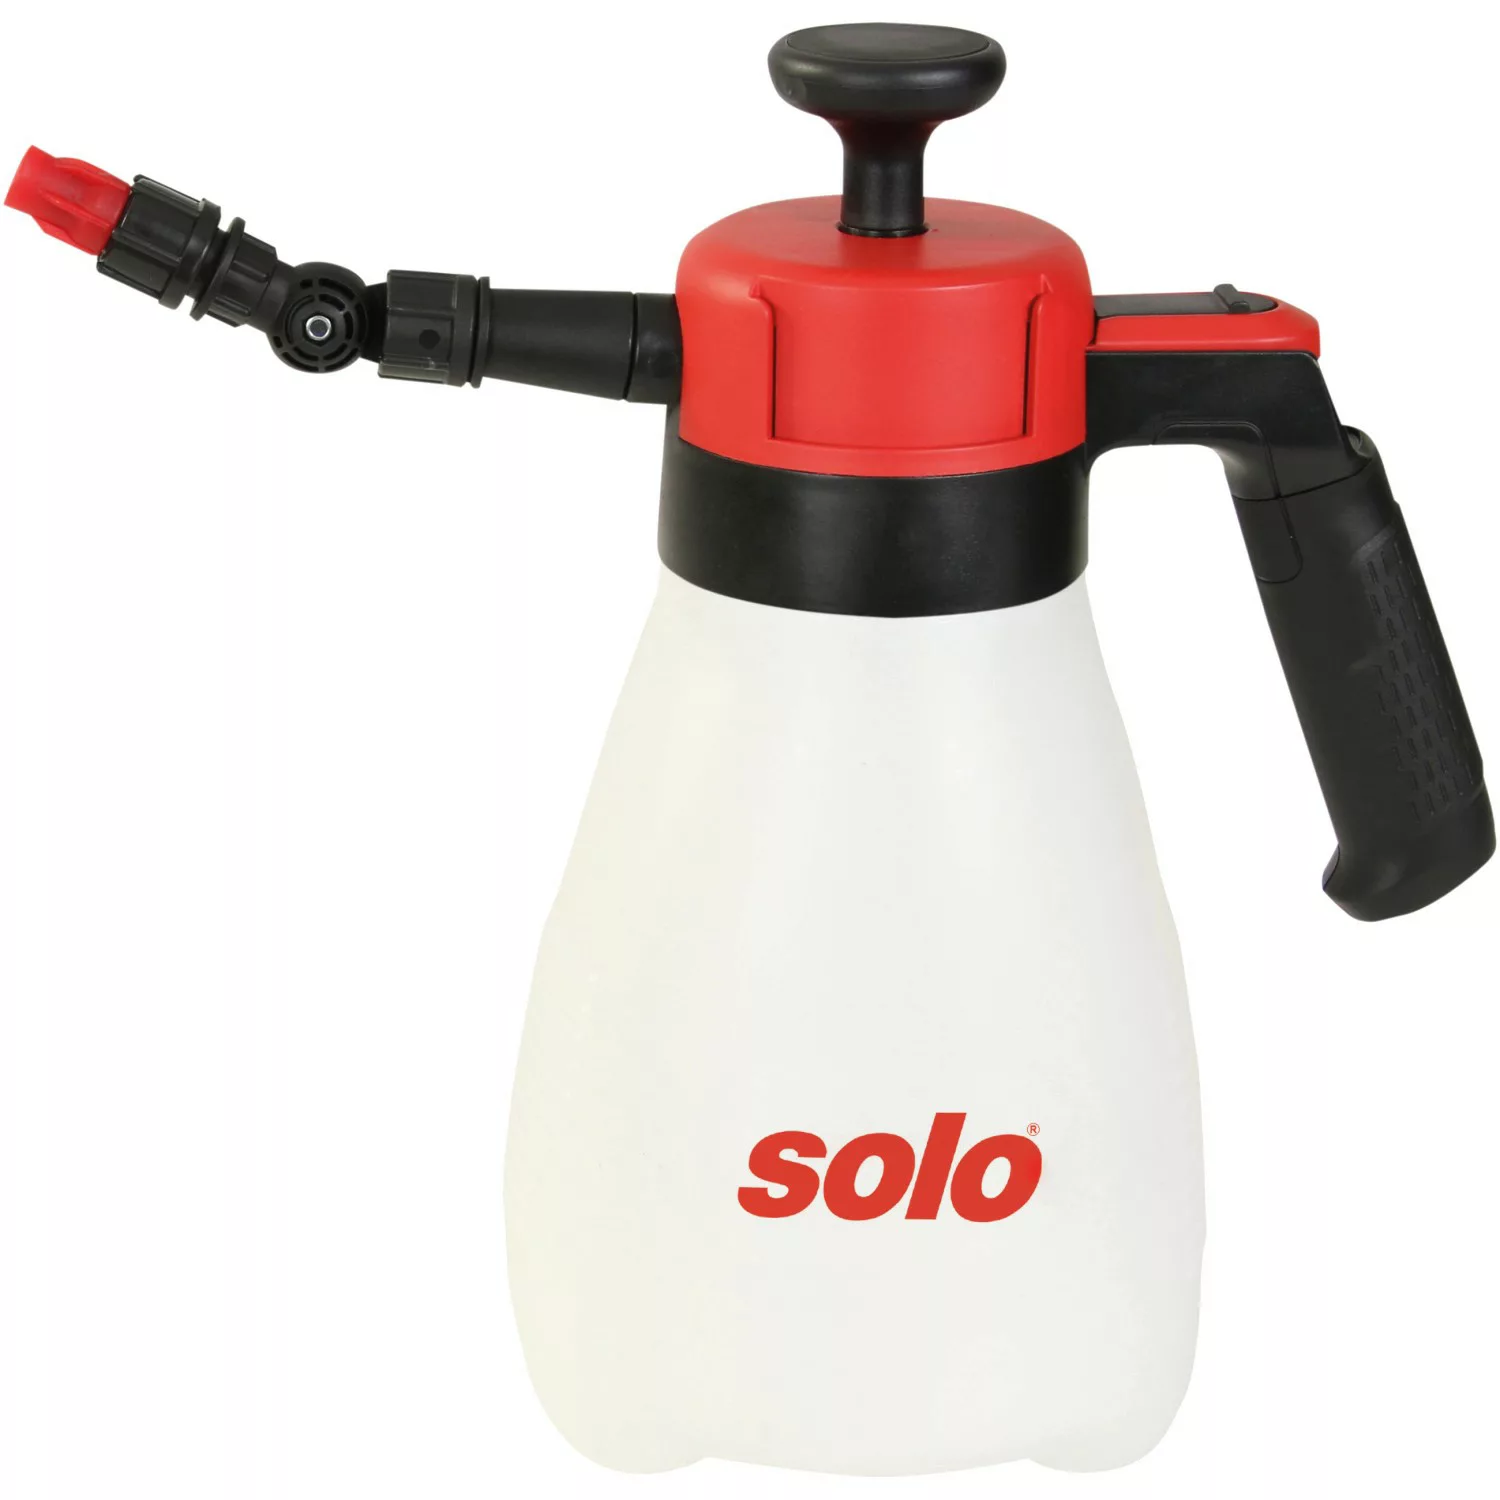 Solo Druckspritze 201 C Comfort 1,25 l günstig online kaufen